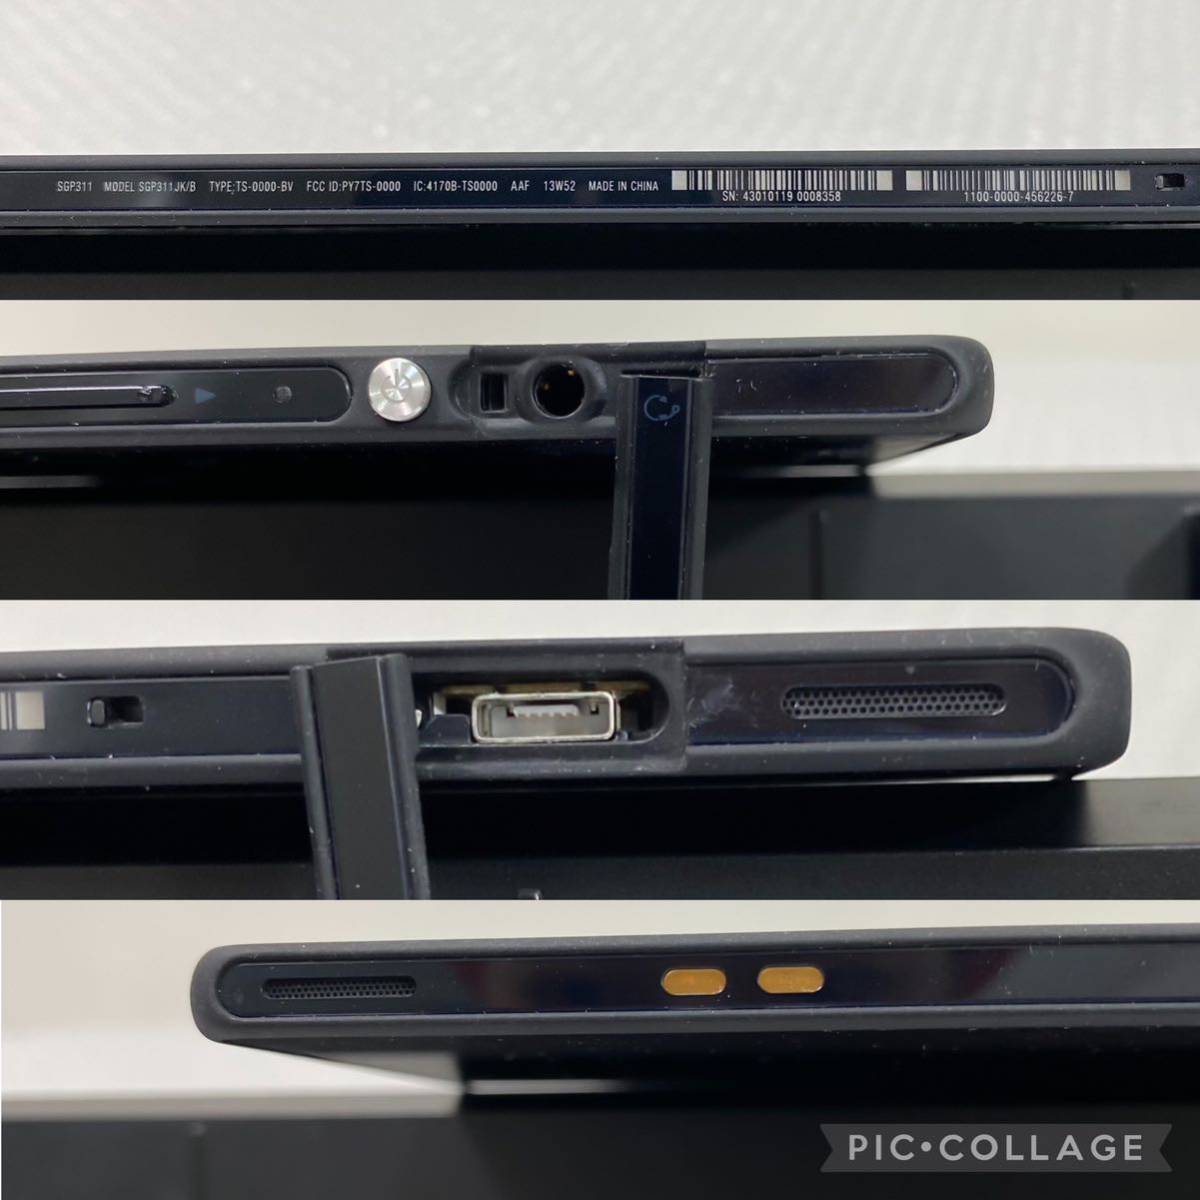 【動作品】SONY Xperia Tablet Z SGP311 MODEL:SGP311 JK/B 16GB Wi-Fi モデル 10.1インチ タブレット_画像10